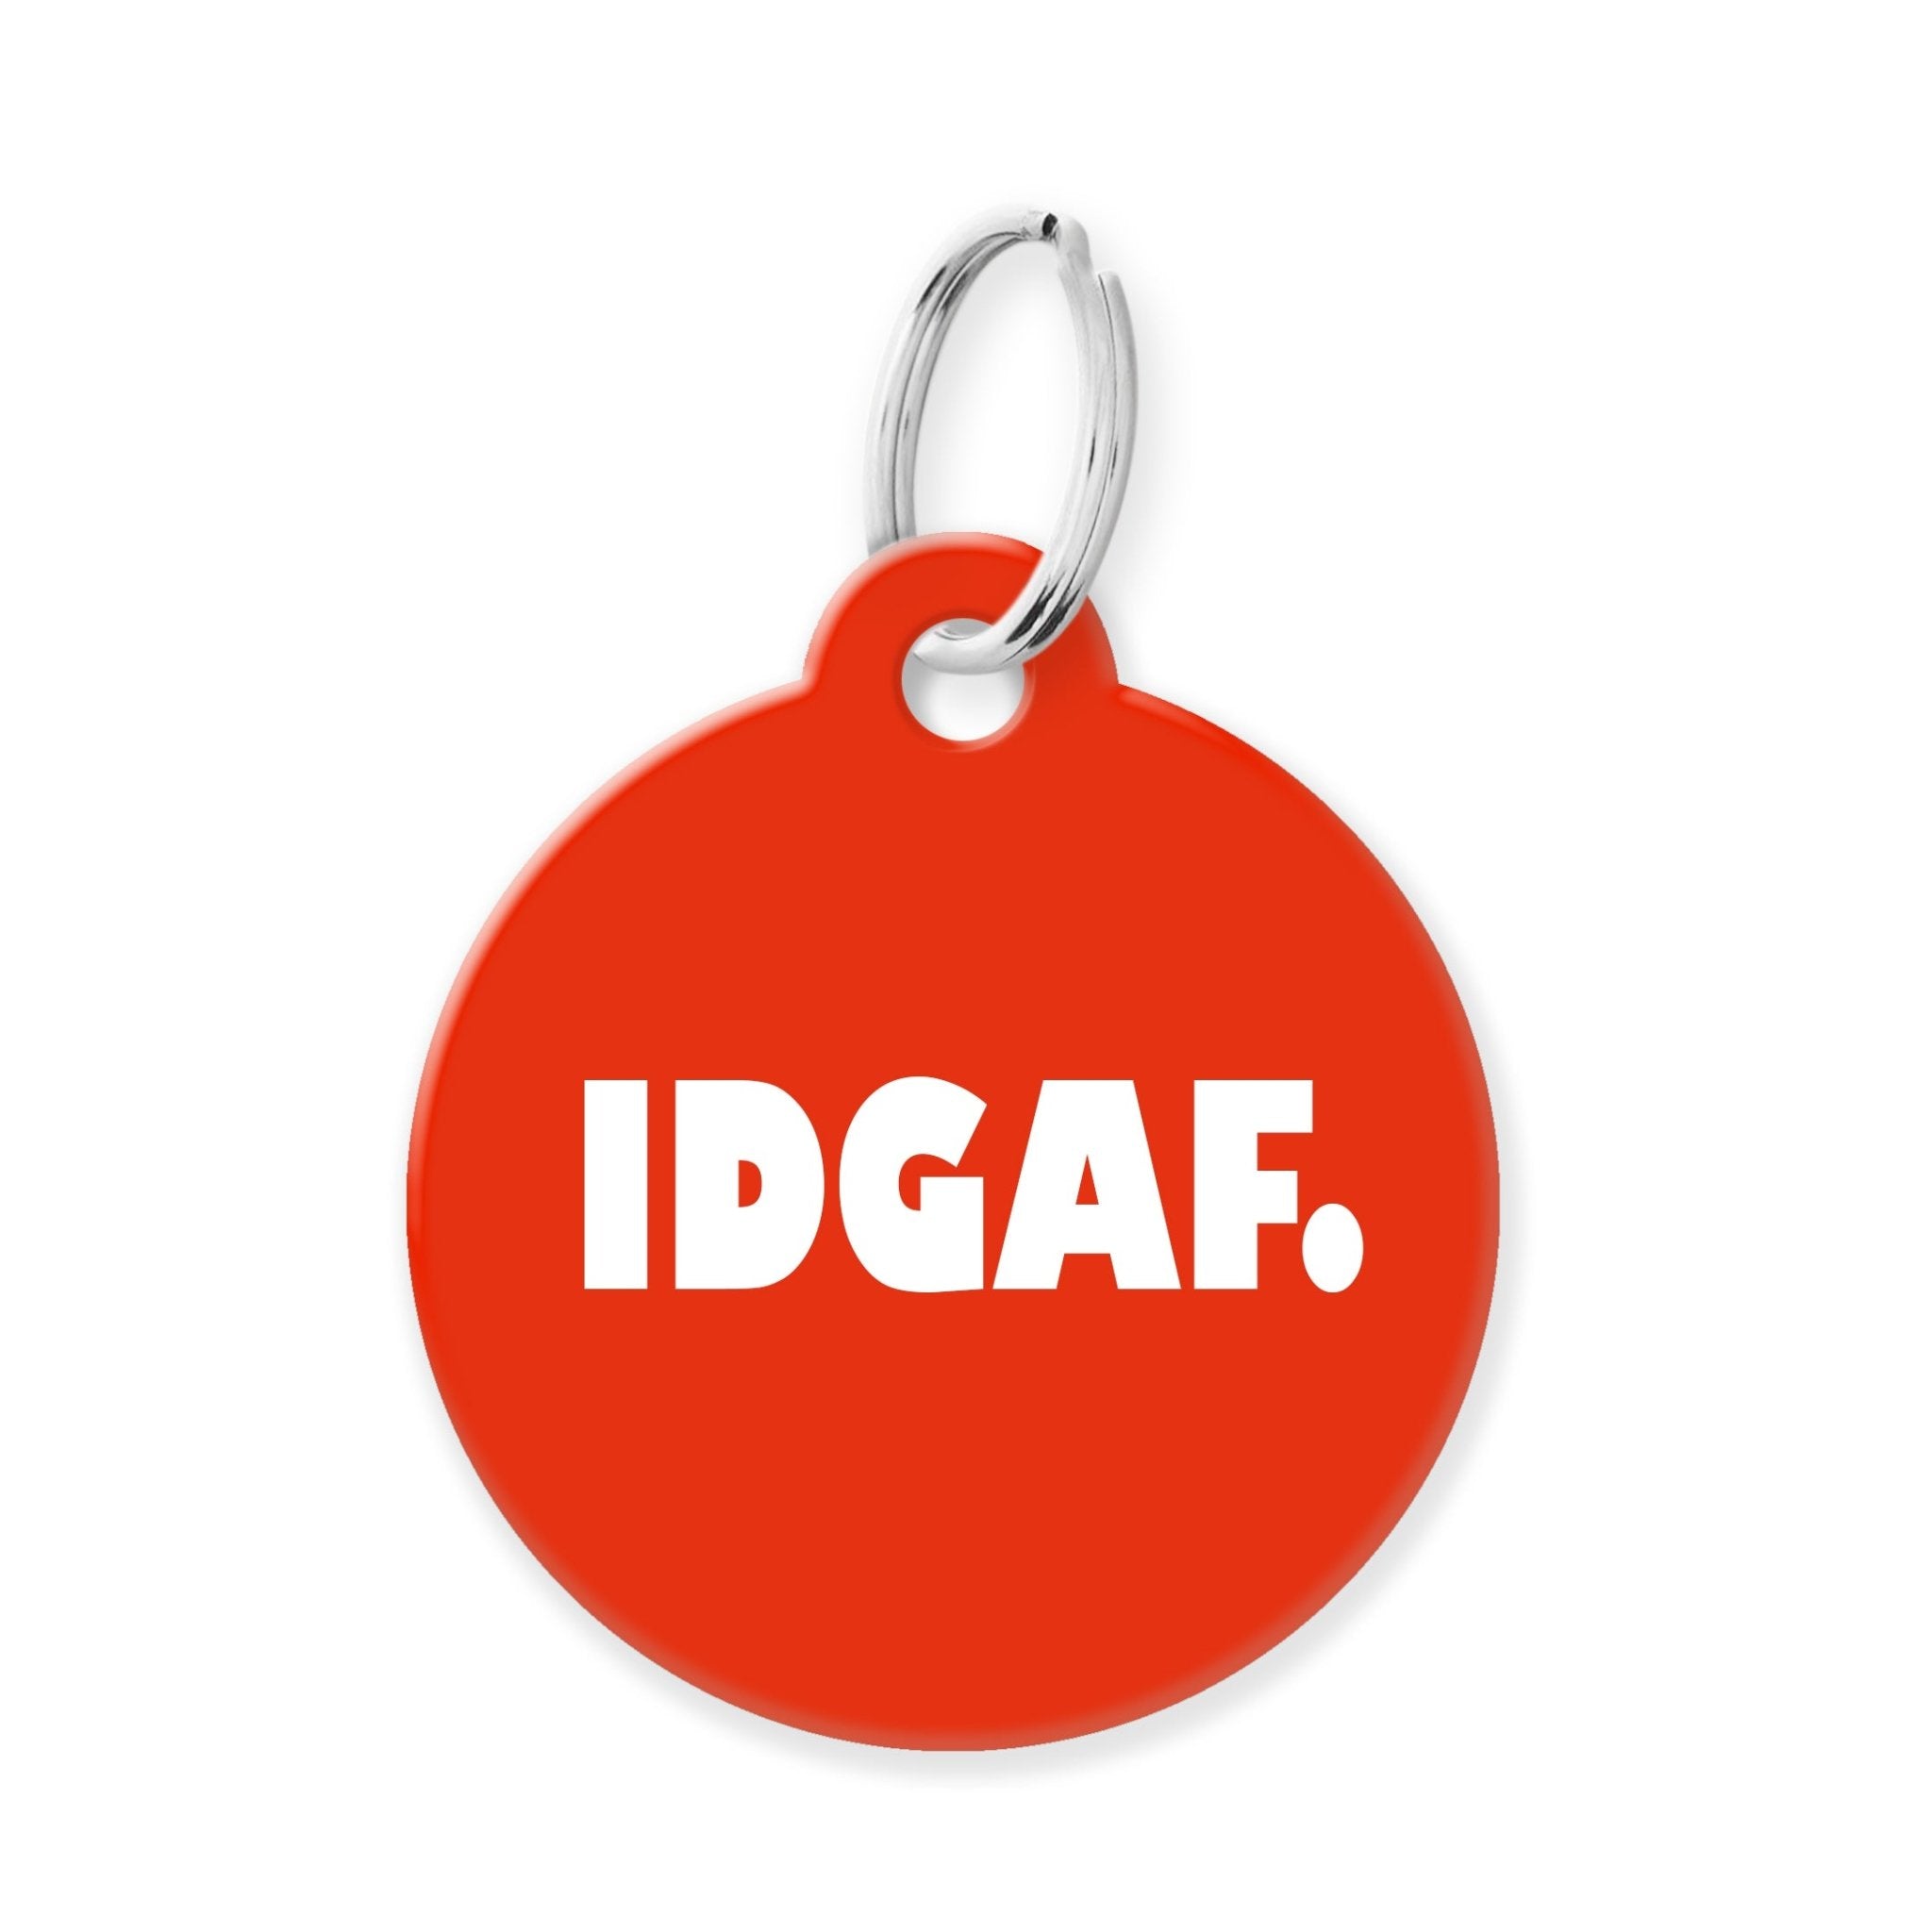 IDGAF Funny Pet Tag - The Barking Mutt